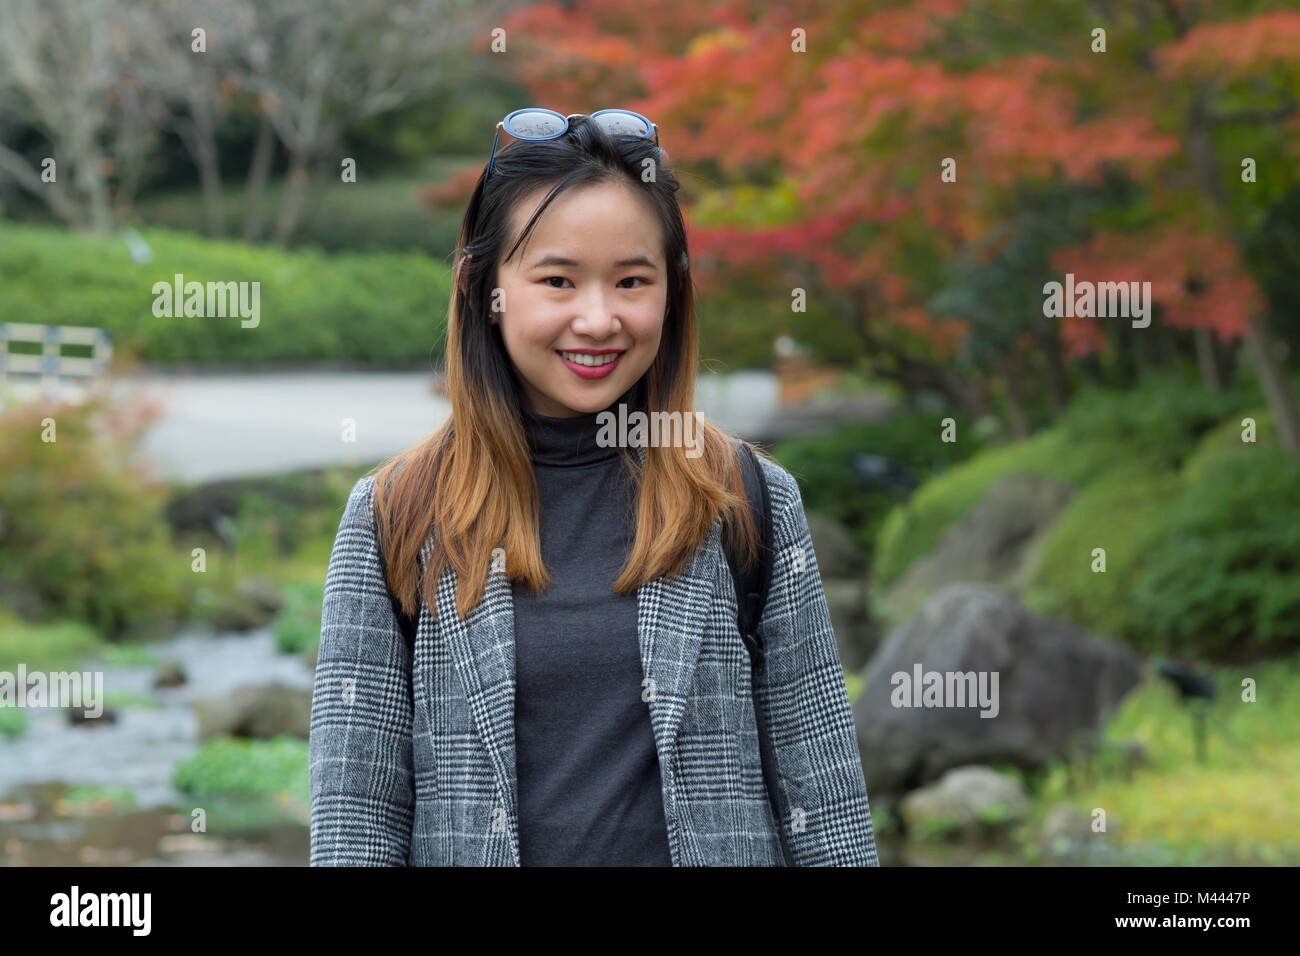 Belle femme posant dans un jardin japonais Banque D'Images